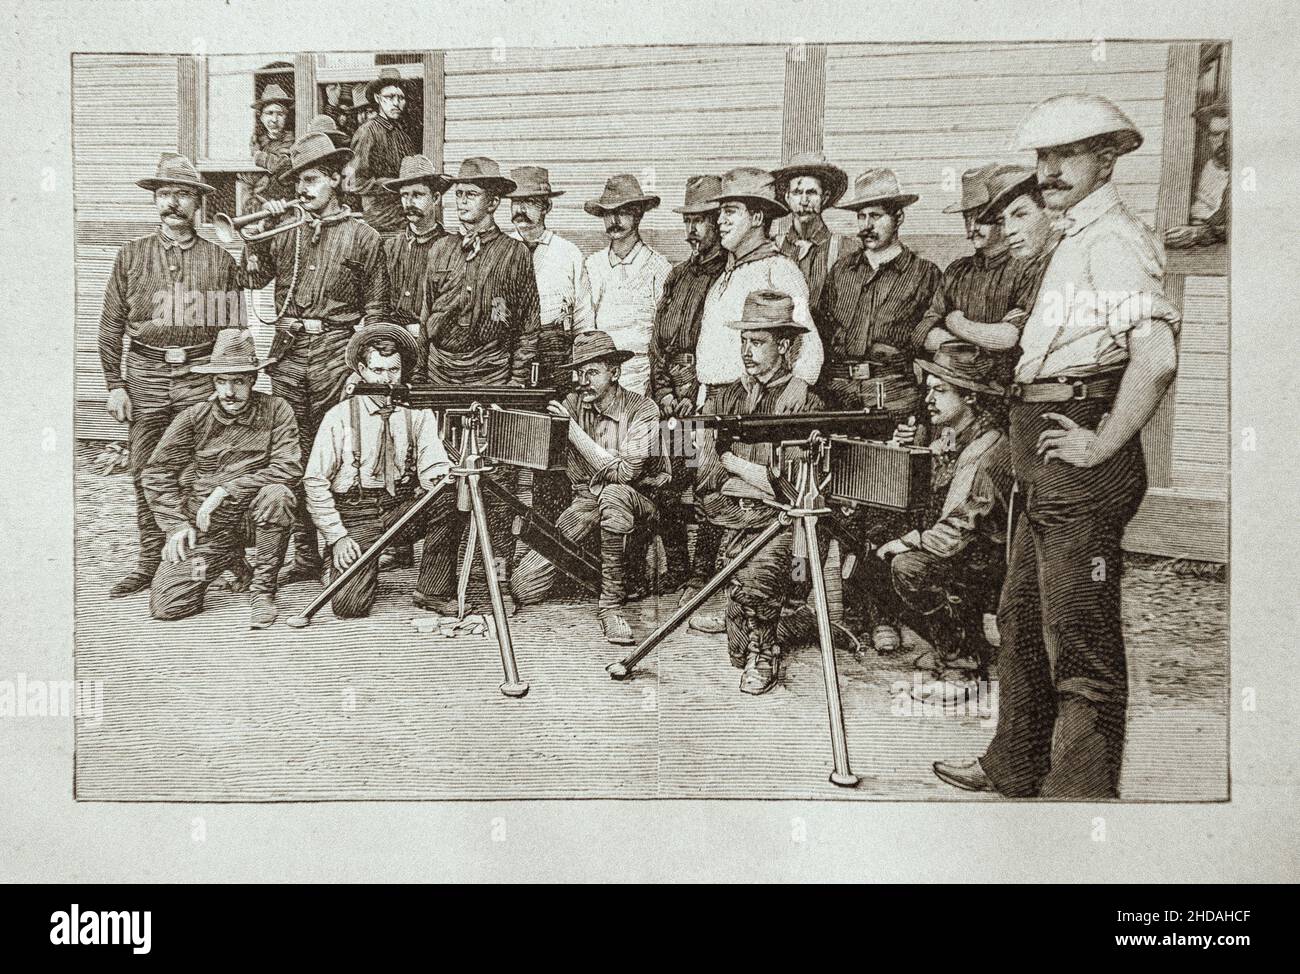 Gravure ancienne de la guerre hispano-américaine : les 'Rough-Riders' du colonel Roosevelt (1st United States Volunteer Cavalry).1898 la Wa espagnole-américaine Banque D'Images